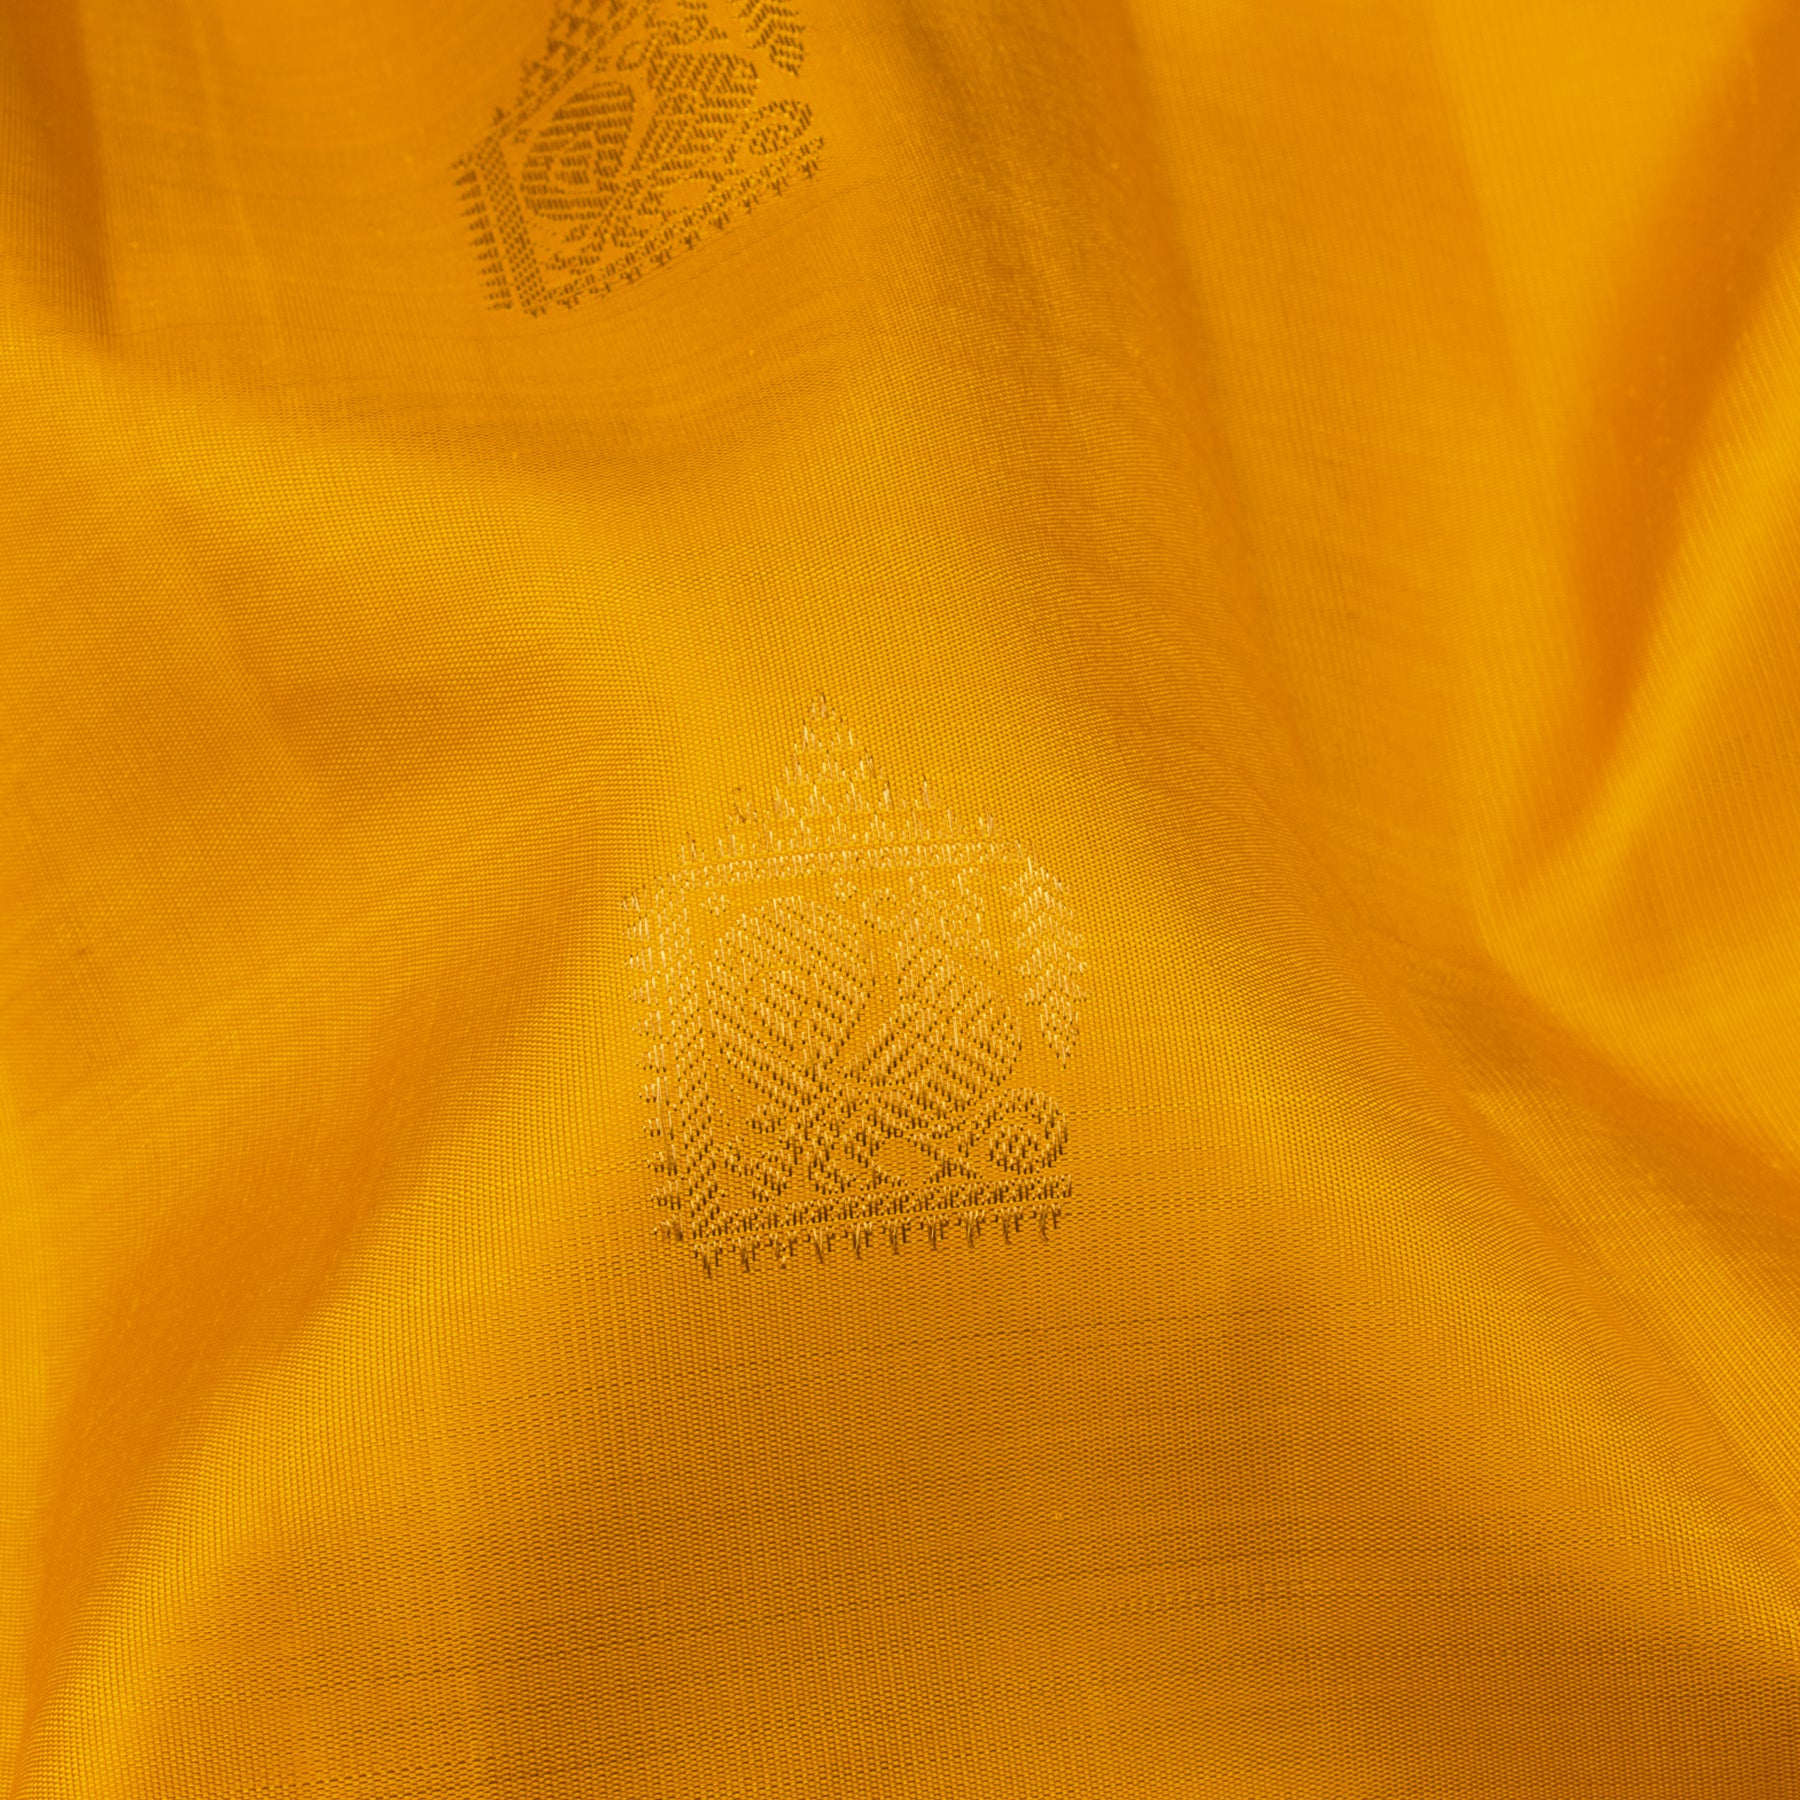 Kanakavalli Kanjivaram Silk Sari 23-110-HS001-14332 - Fabric View